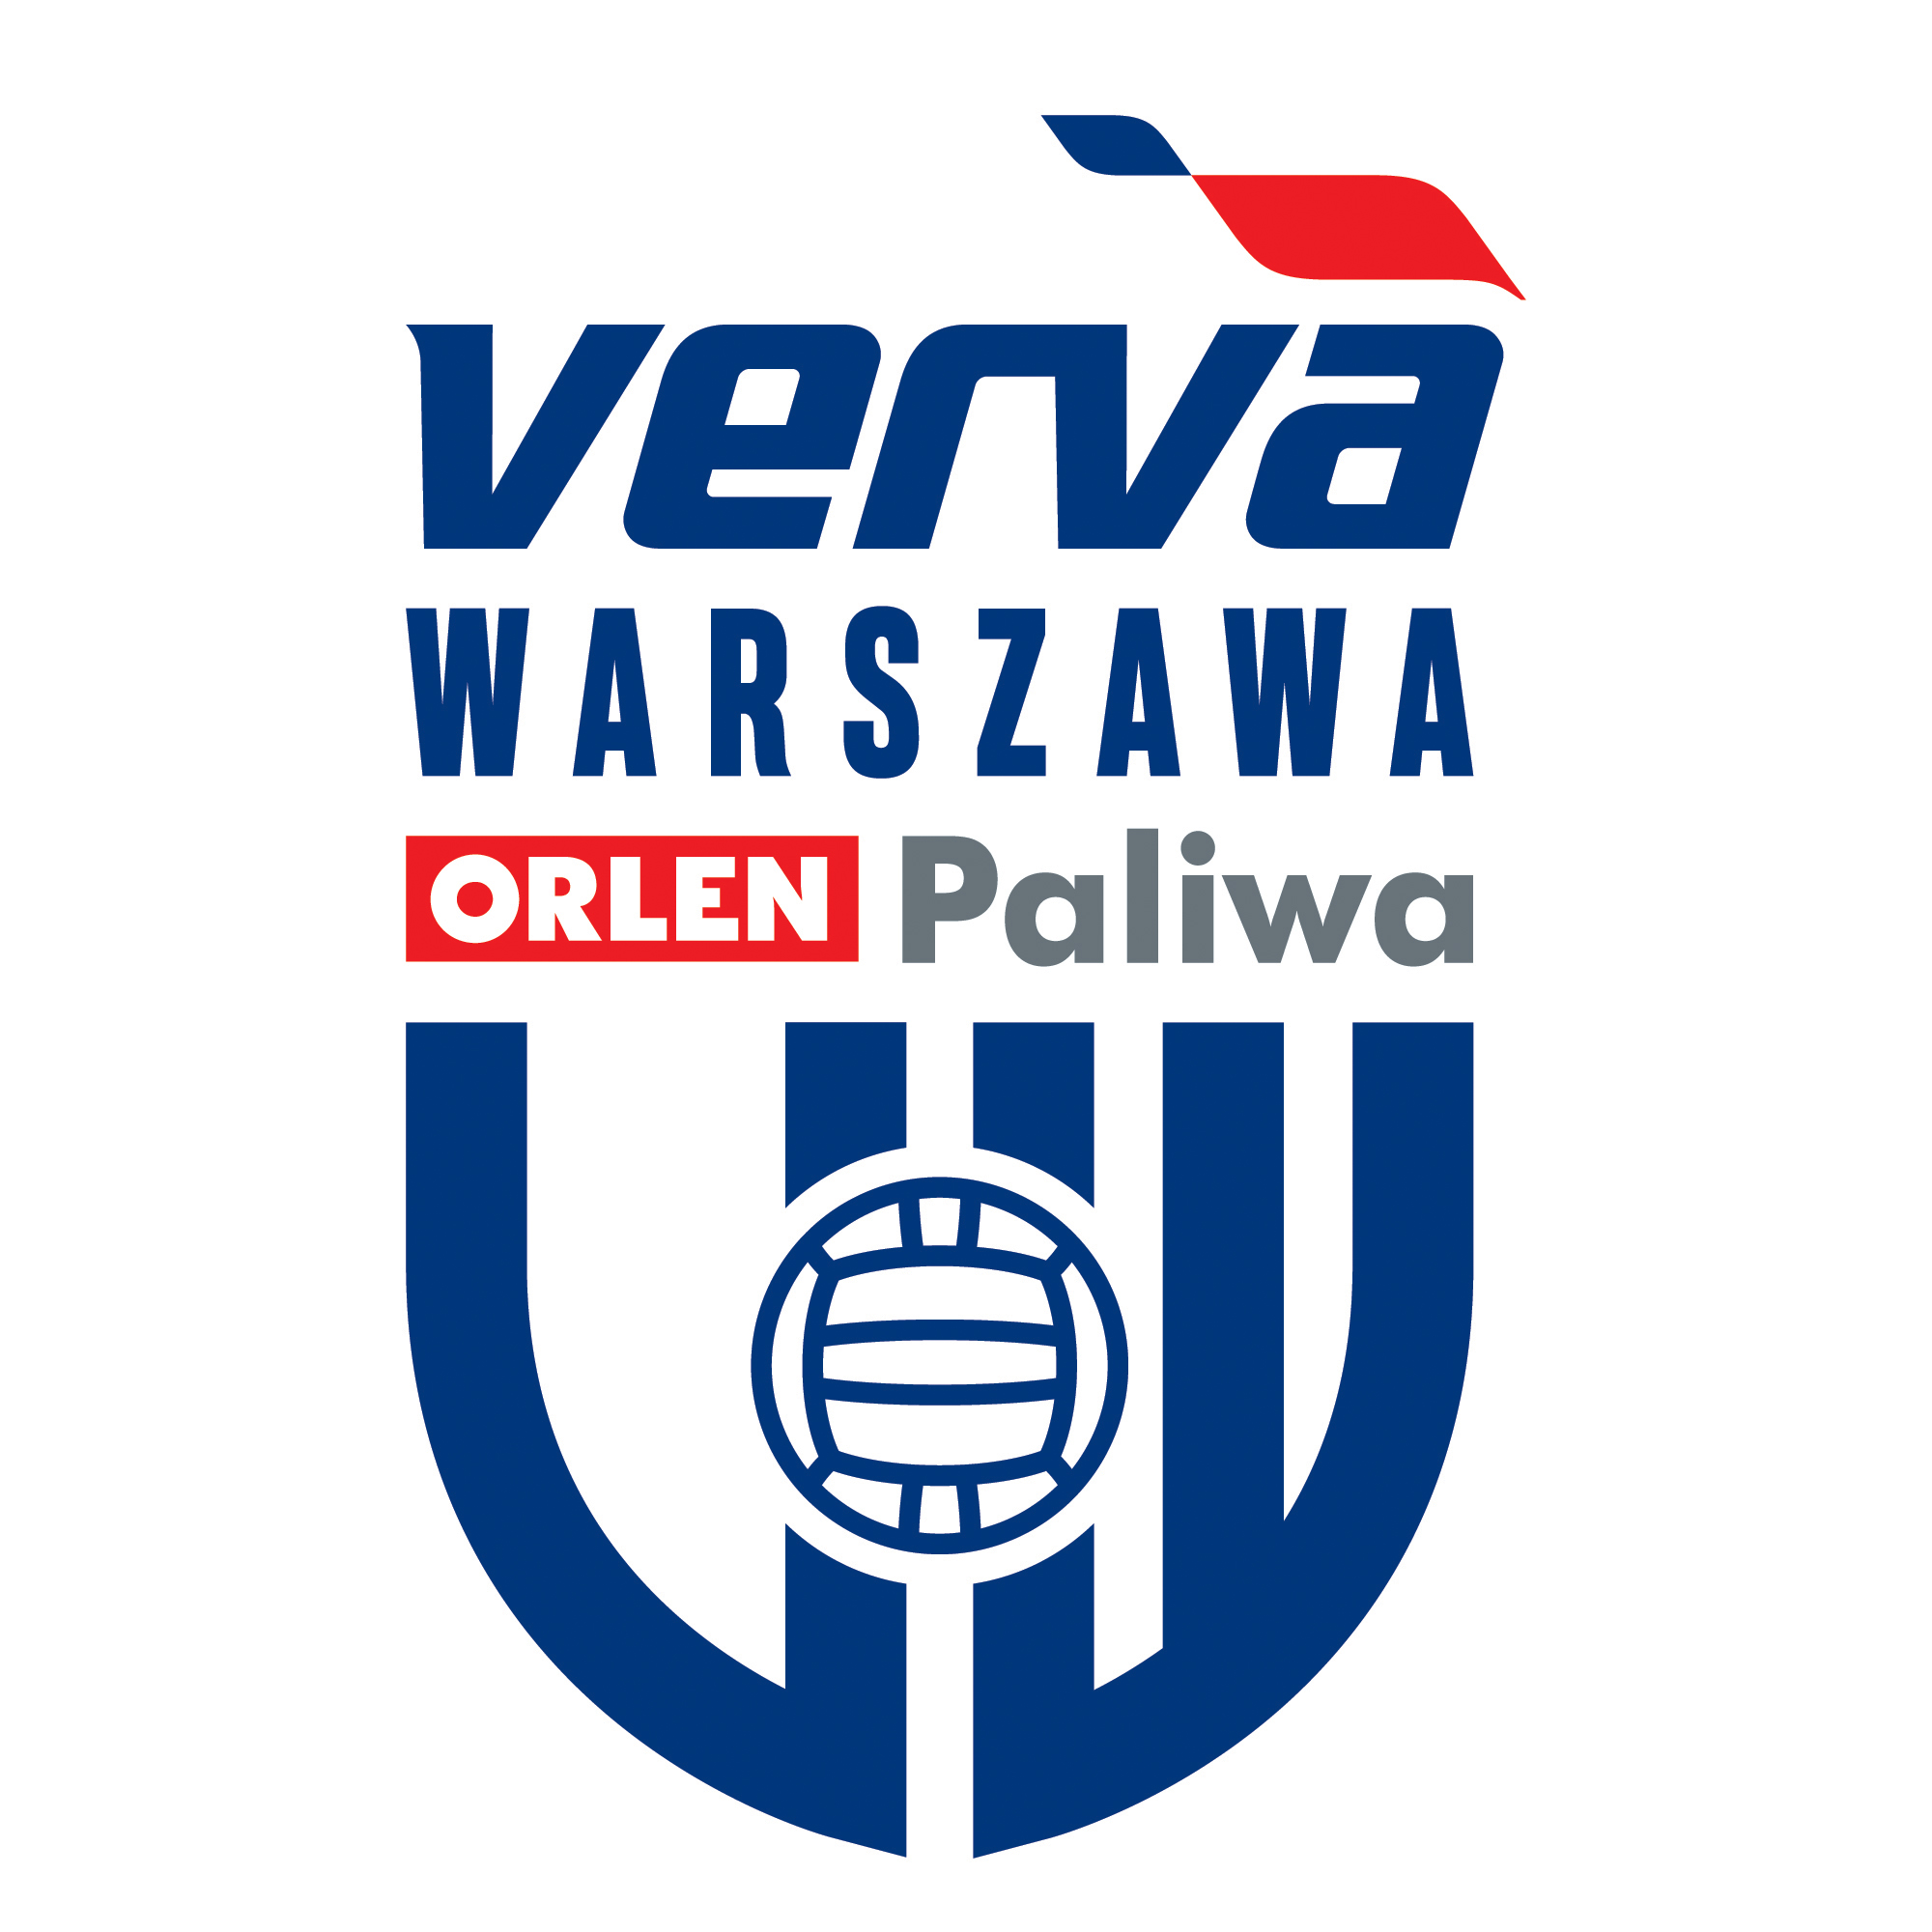 Dušan Petković wzmocnił VERVĘ Warszawa ORLEN Paliwa!